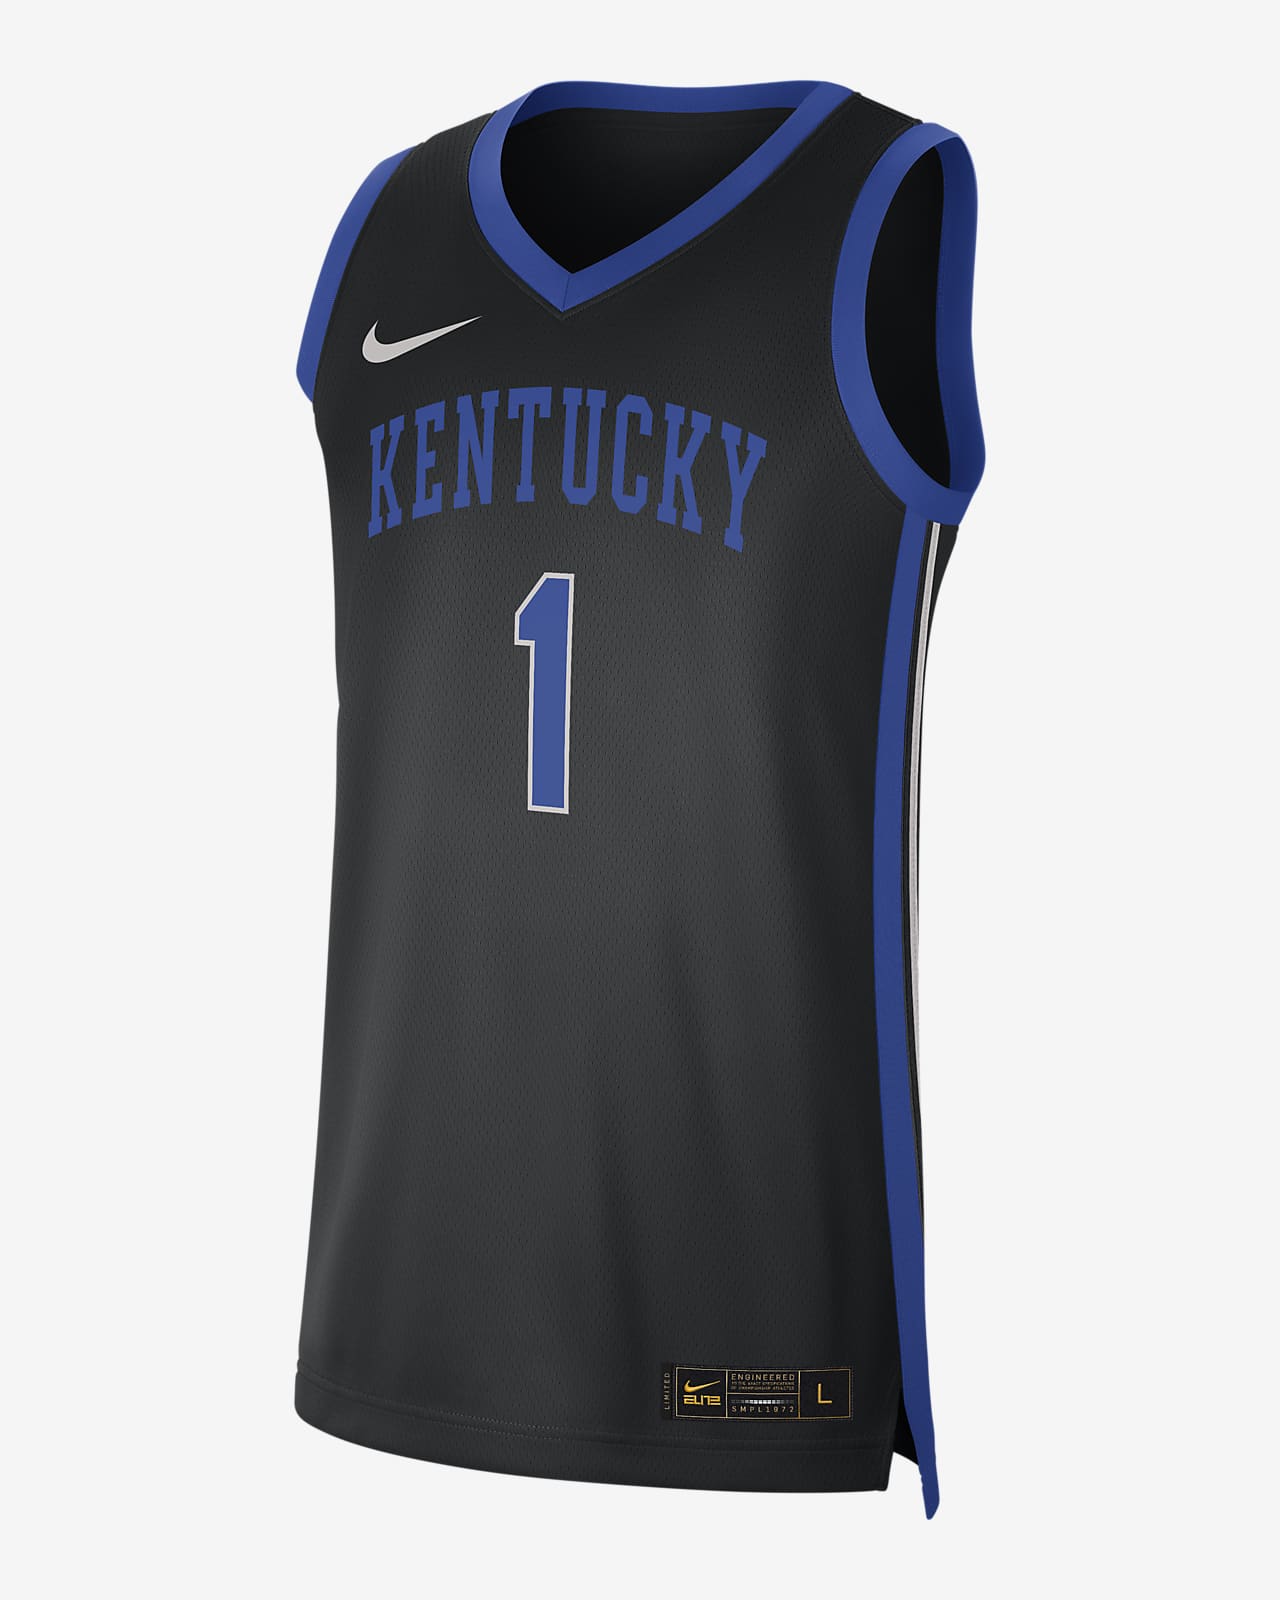 Jersey de básquetbol Replica para hombre Nike College Dri-FIT (Kentucky)